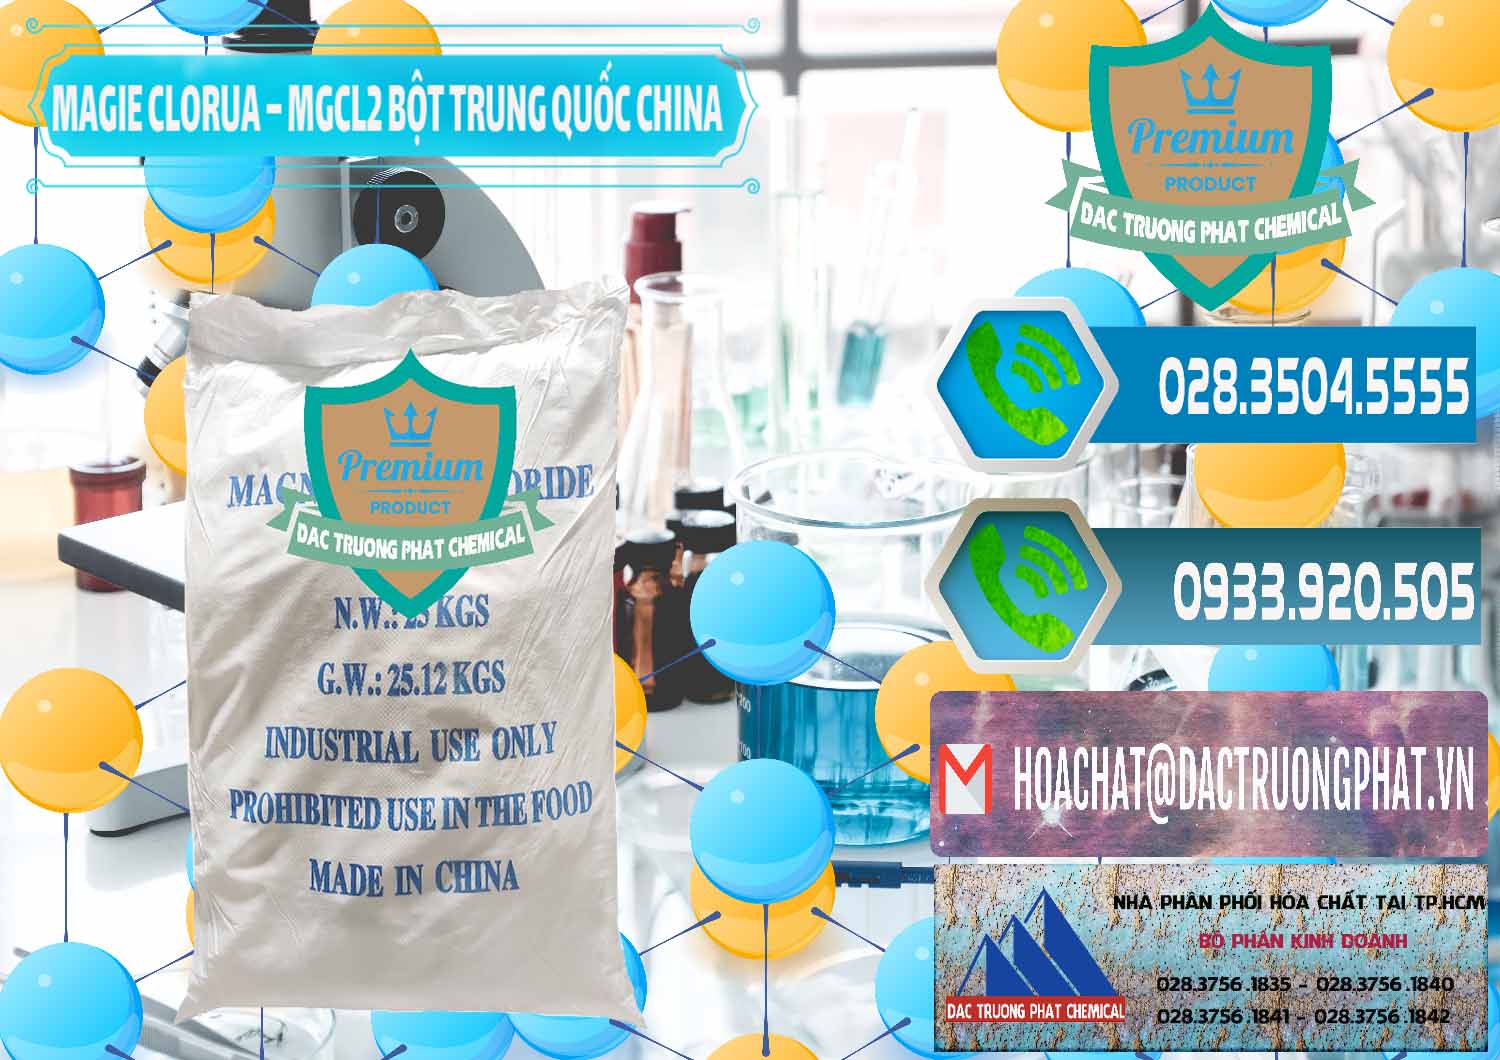 Nơi kinh doanh _ bán Magie Clorua – MGCL2 96% Dạng Bột Bao Chữ Xanh Trung Quốc China - 0207 - Công ty chuyên cung ứng & phân phối hóa chất tại TP.HCM - congtyhoachat.net